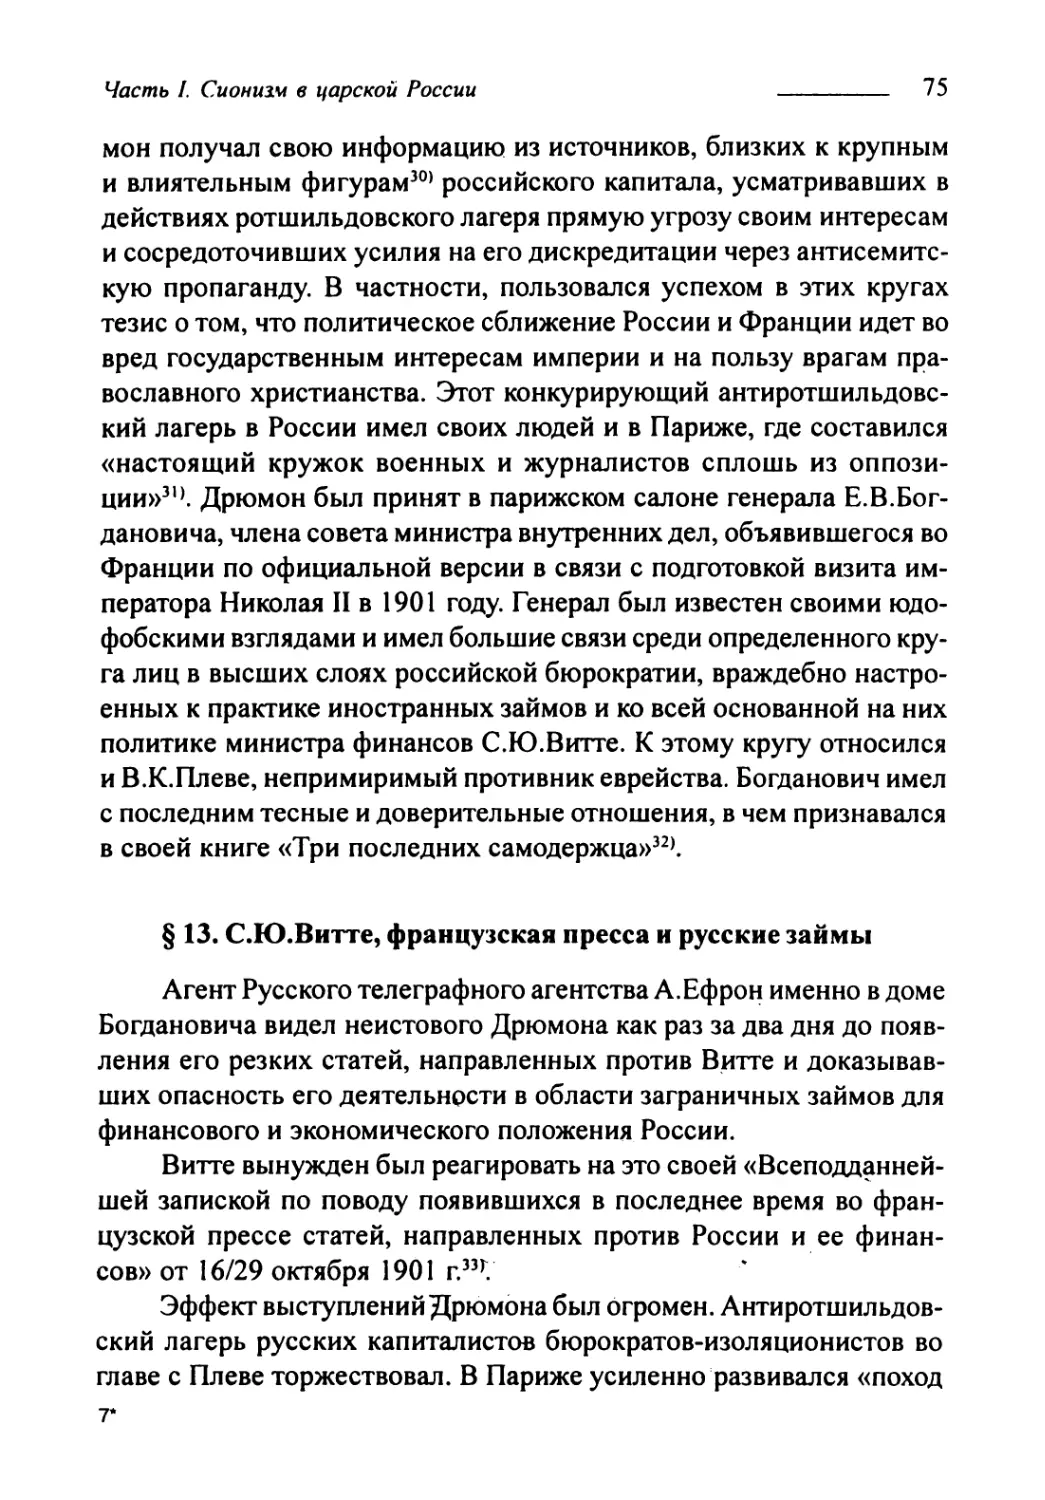 § 13. С.Ю. Витте, французская пресса и русские займы